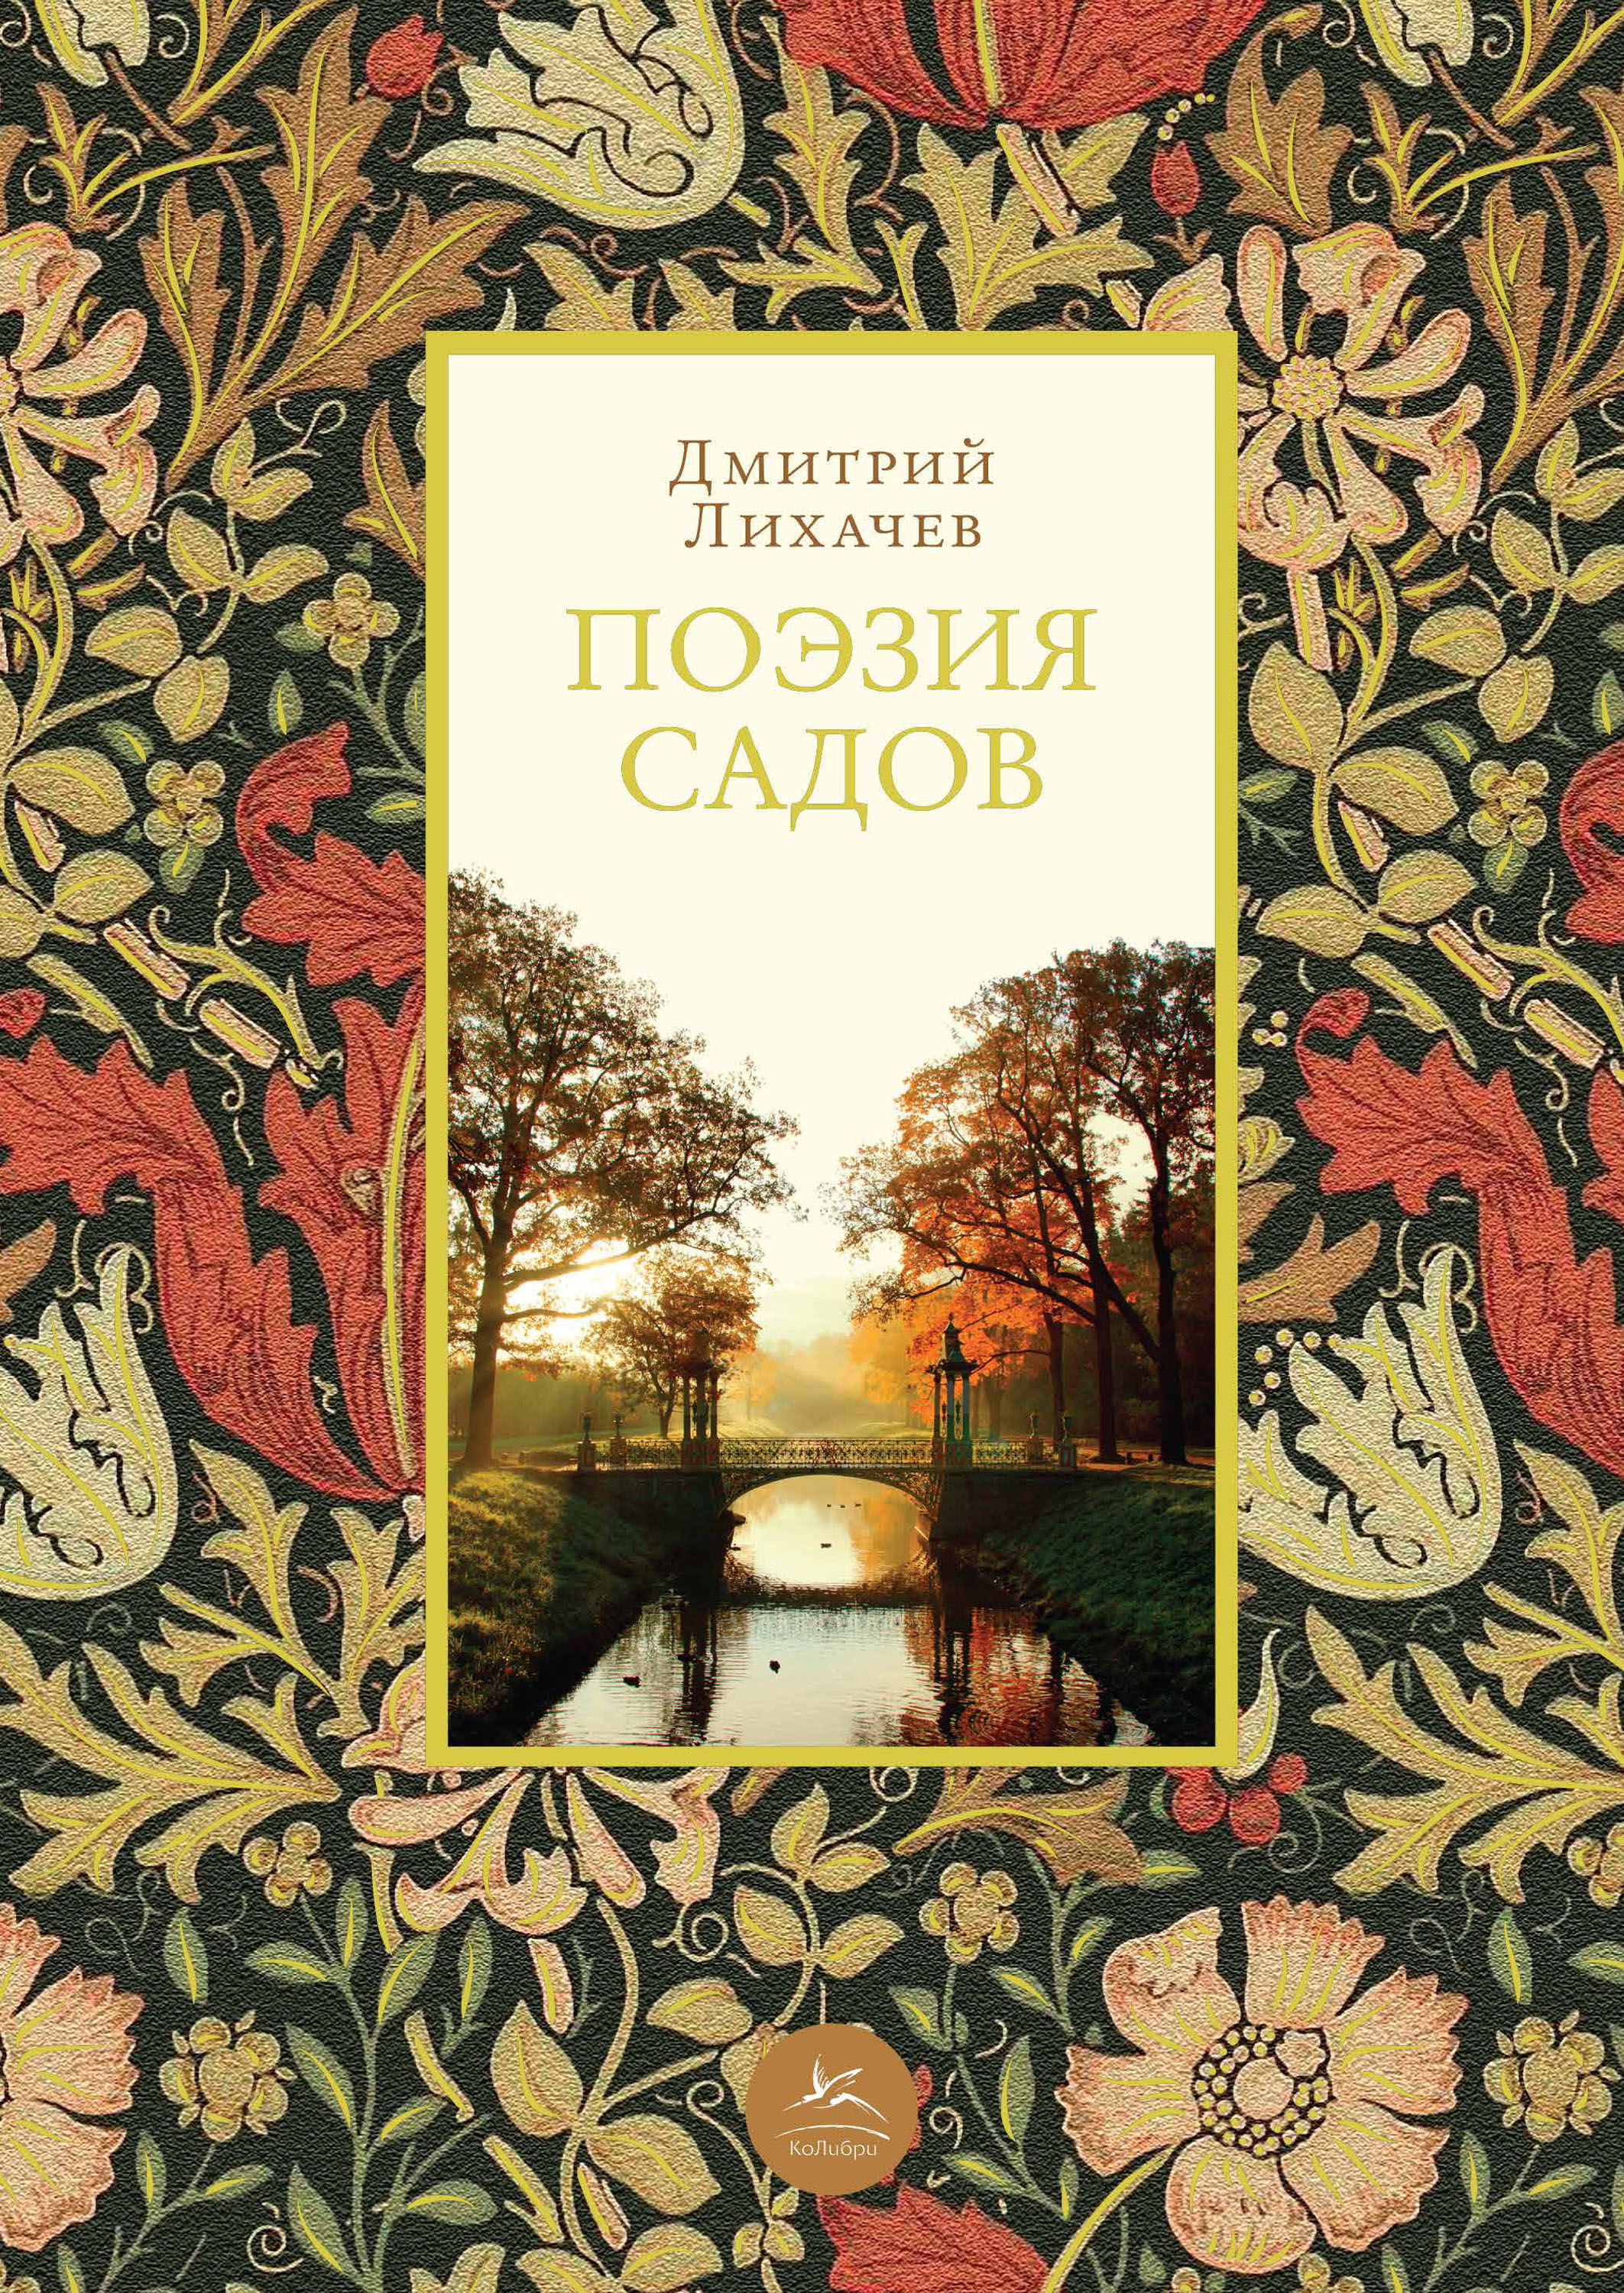 Книга Поэзия садов из серии , созданная Дмитрий Лихачев, может относится к жанру Архитектура, Изобразительное искусство, фотография. Стоимость книги Поэзия садов  с идентификатором 33165702 составляет 379.00 руб.